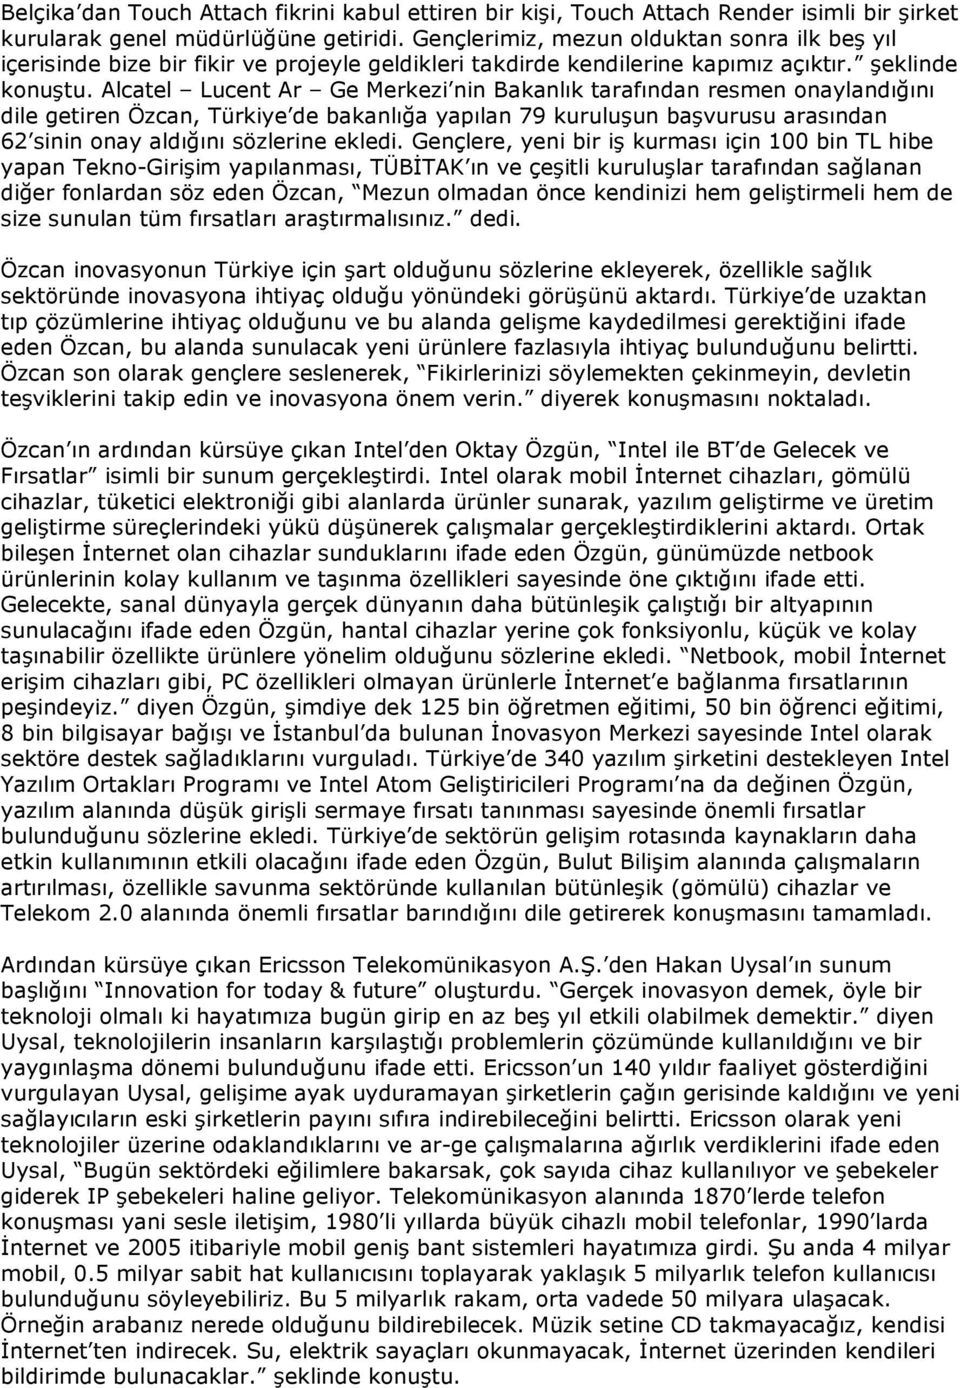 Alcatel Lucent Ar Ge Merkezi nin Bakanlık tarafından resmen onaylandığını dile getiren Özcan, Türkiye de bakanlığa yapılan 79 kuruluşun başvurusu arasından 62 sinin onay aldığını sözlerine ekledi.